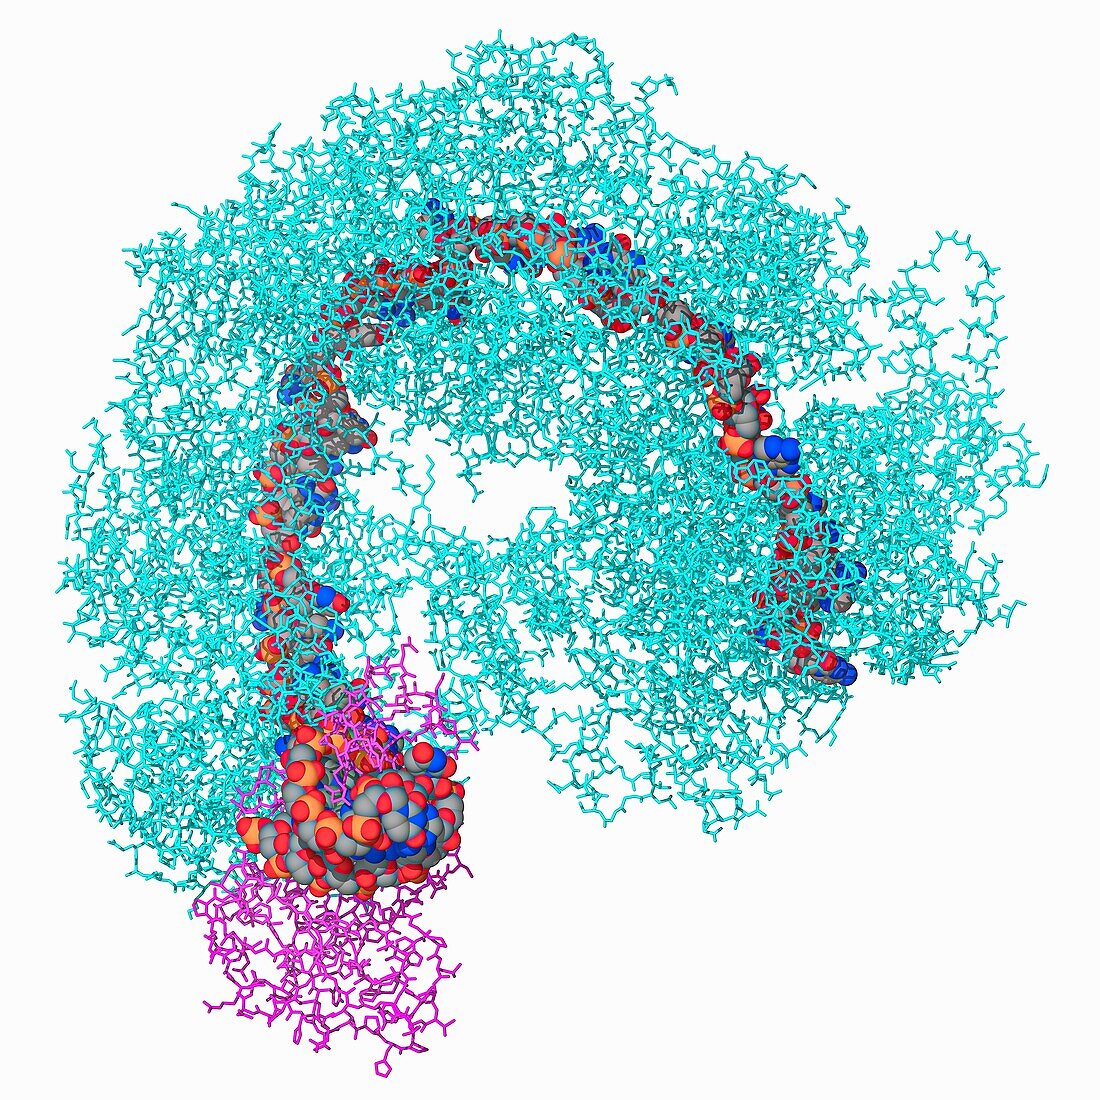 CRISPR-Cas complex, molecular model